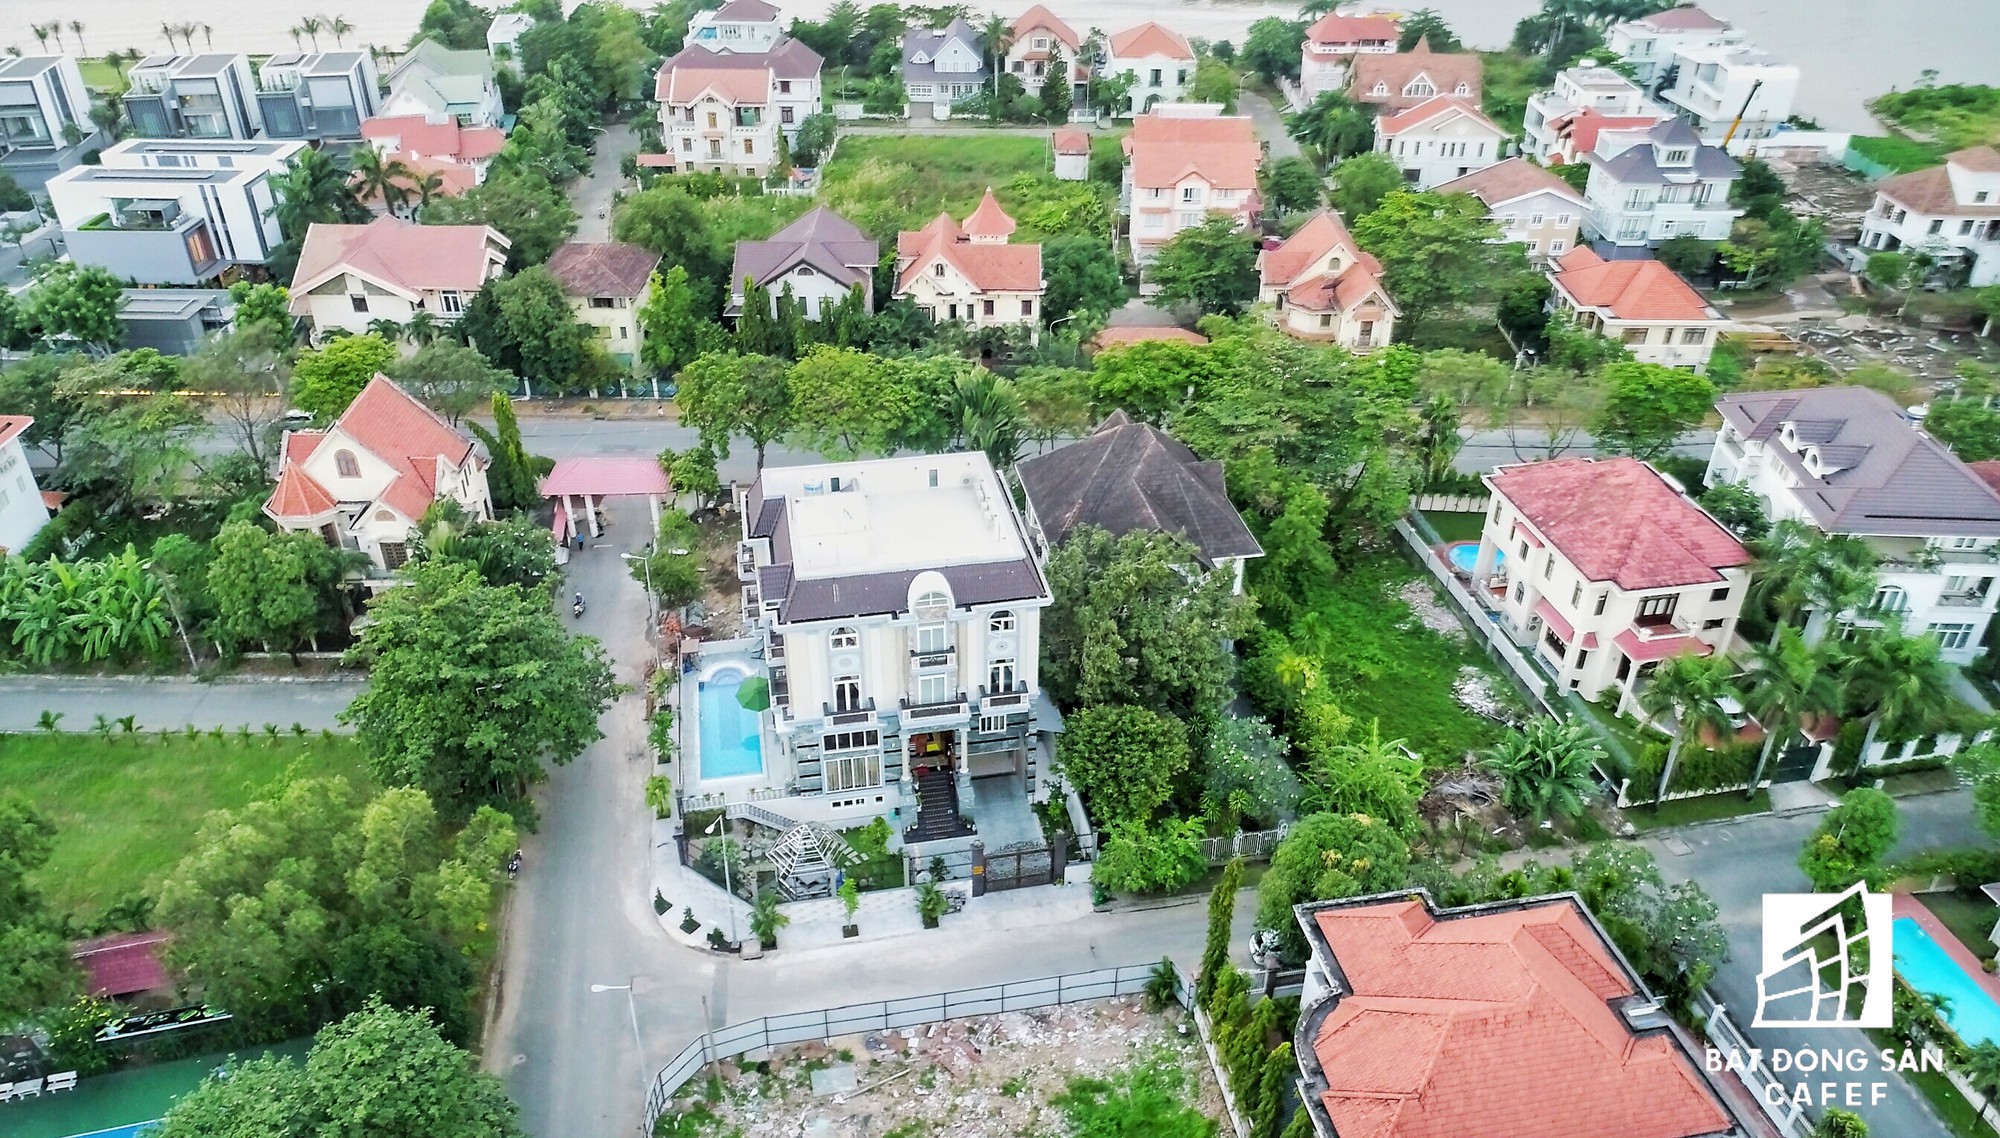 Nhà giàu cũng khóc trong những khu biệt thự sang chảnh bậc nhất Sài Gòn - Ảnh 5.